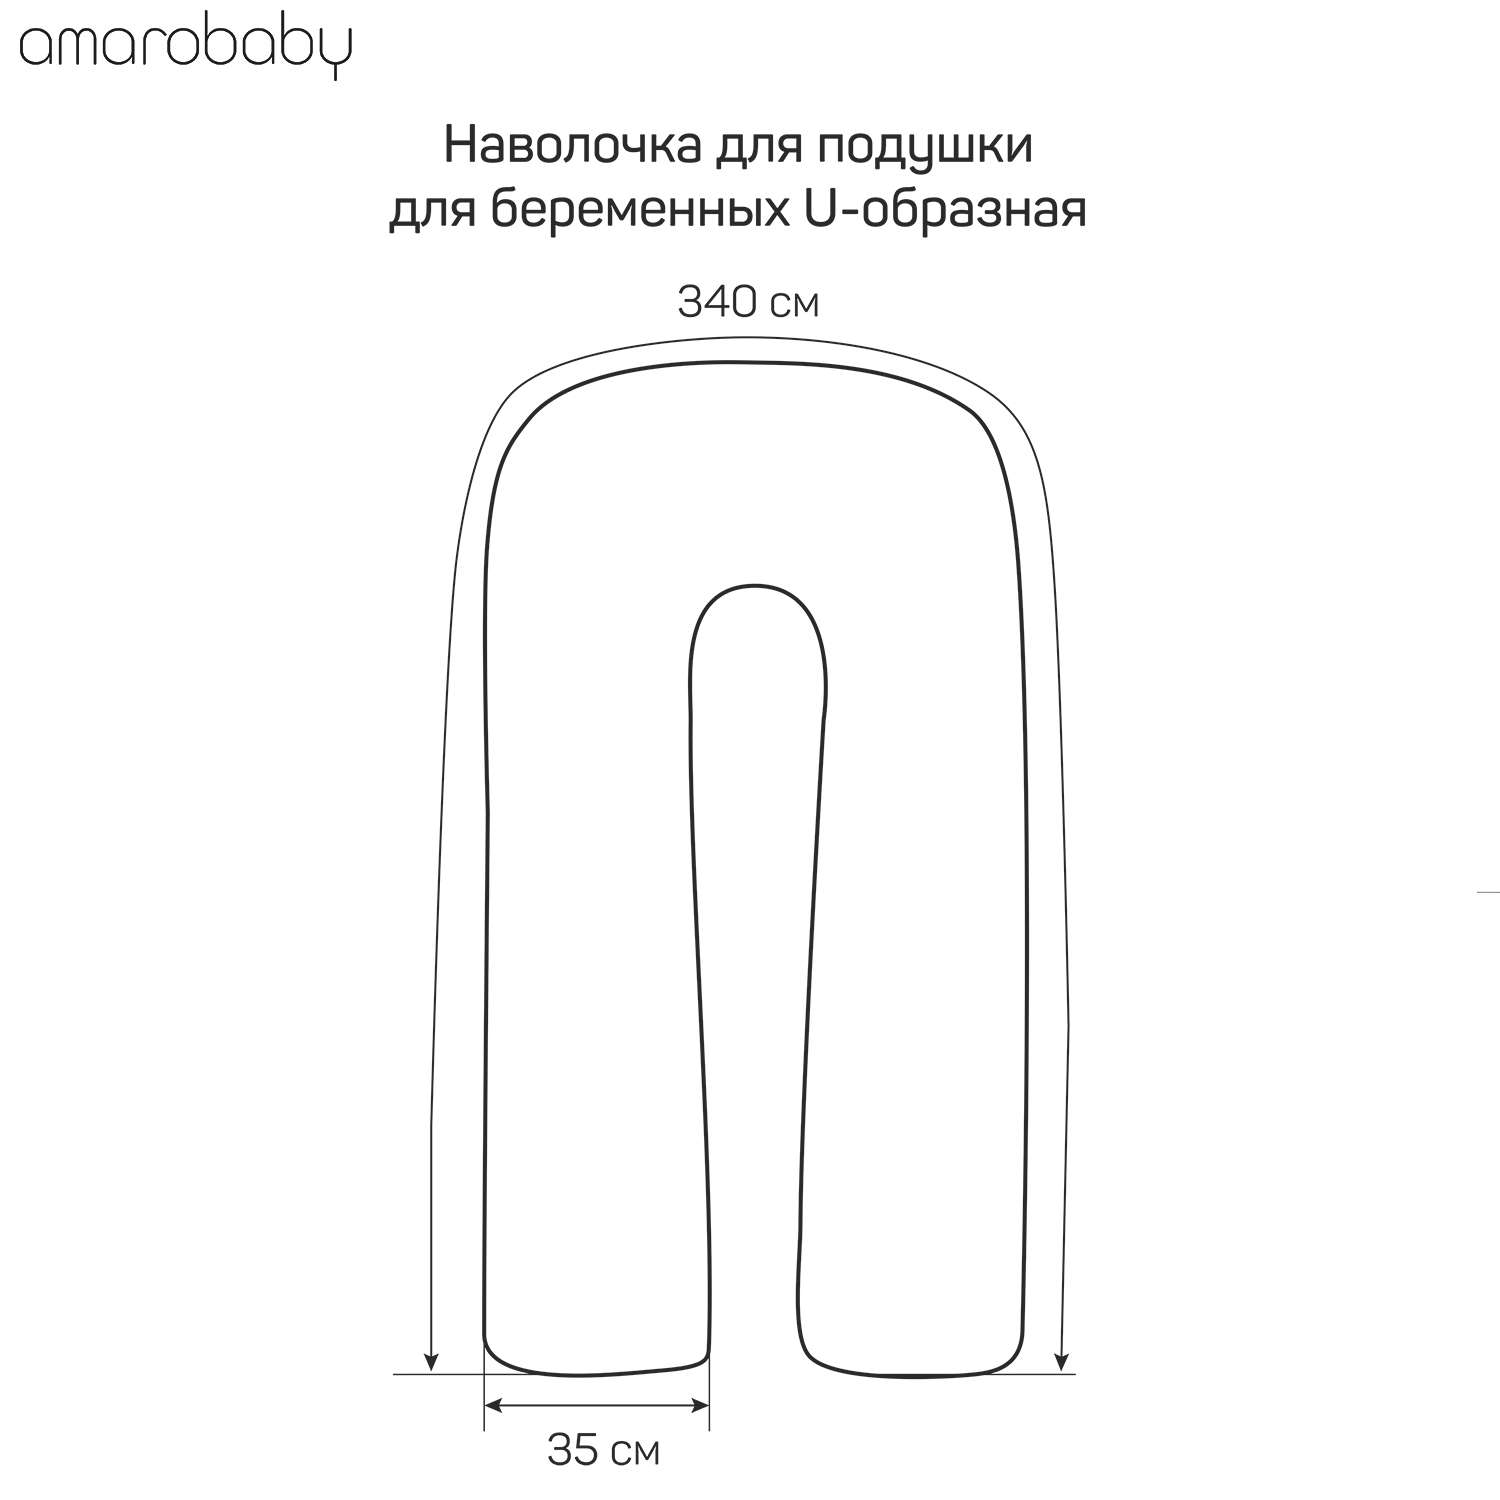 Наволочка AmaroBaby к подушке для беременных U-образная 340х35 см Galaxy синяя - фото 8